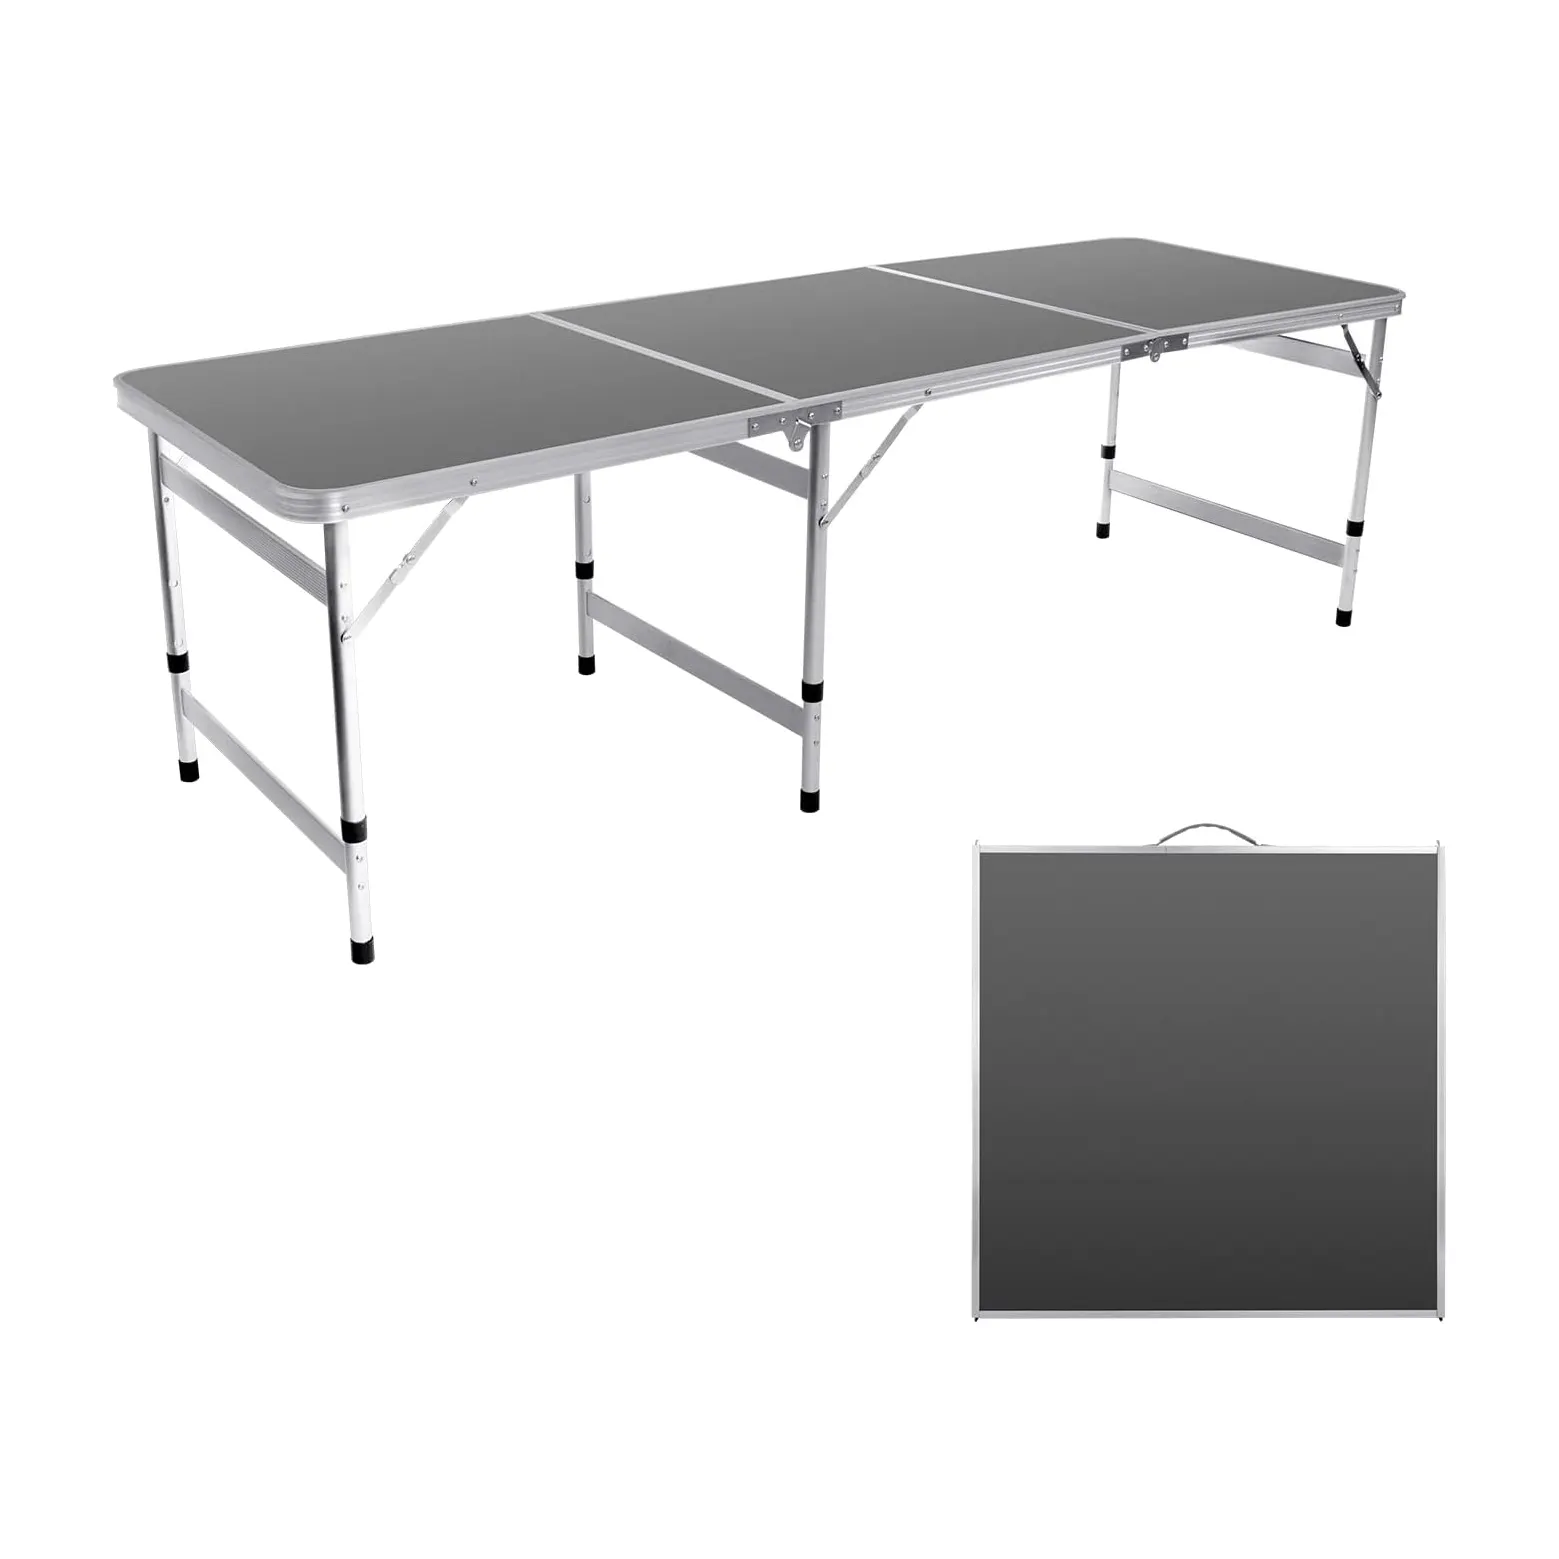 6 Fuß Camping-Tisch tragbarer Tisch mit Griff dreiflügelig Tisch für draußen höhenverstellbar Aluminium europäische Picknick-Grillparty 7 Kilo